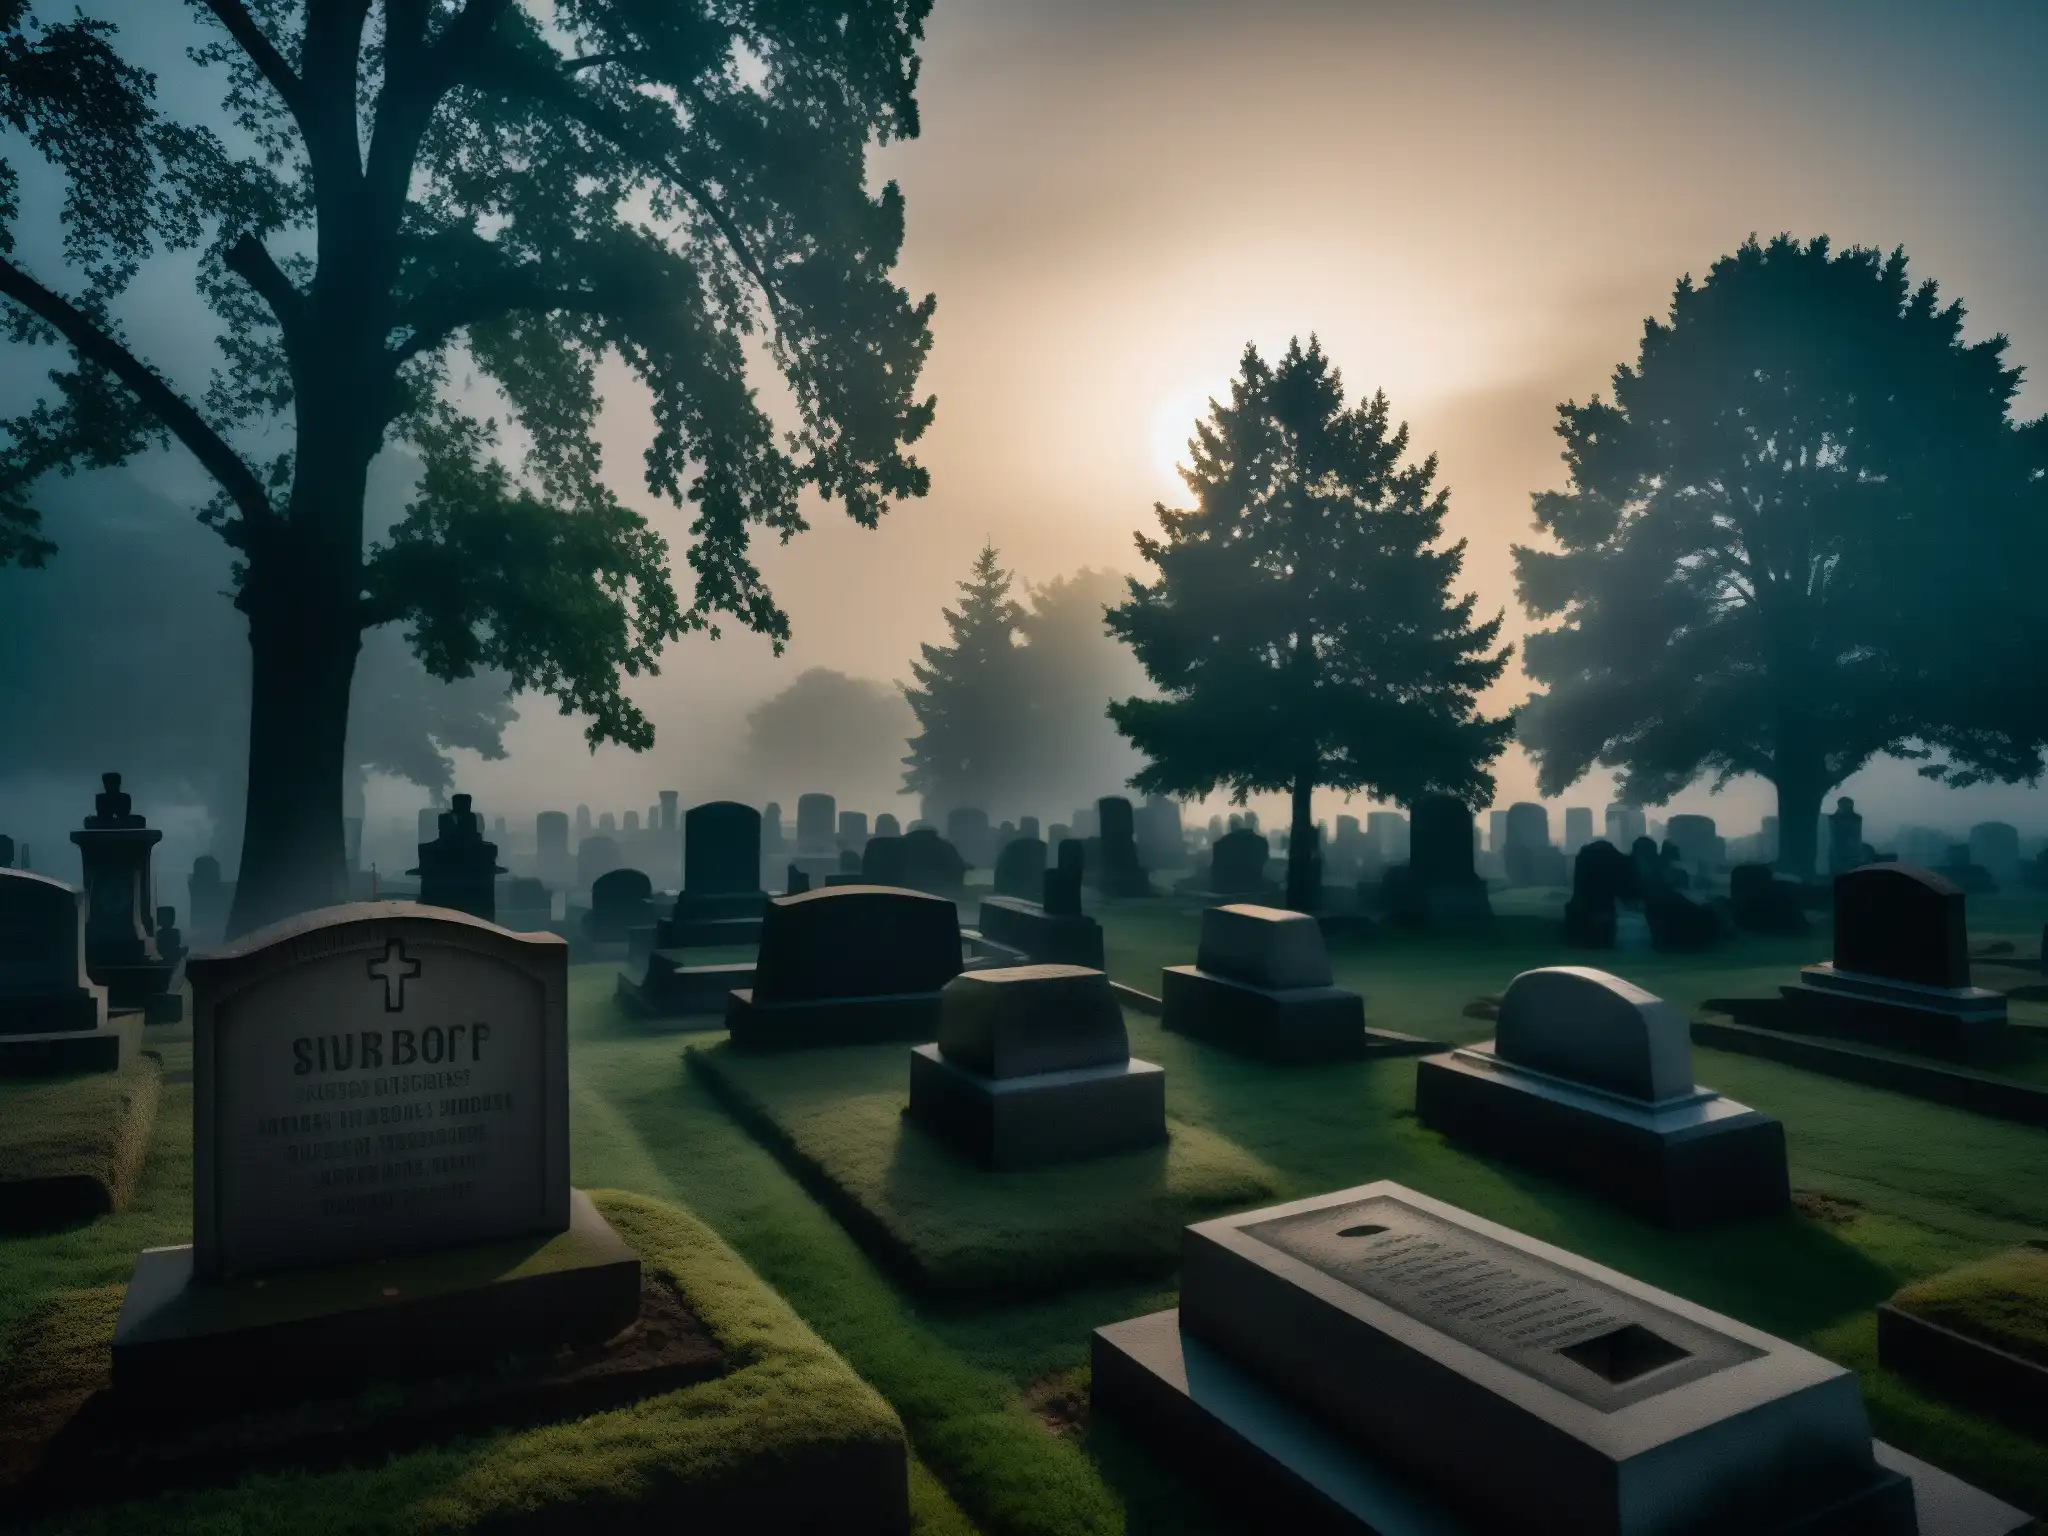 Imagen nocturna de un inquietante cementerio cubierto de niebla, con tumbas y mausoleos antiguos proyectando sombras ominosas